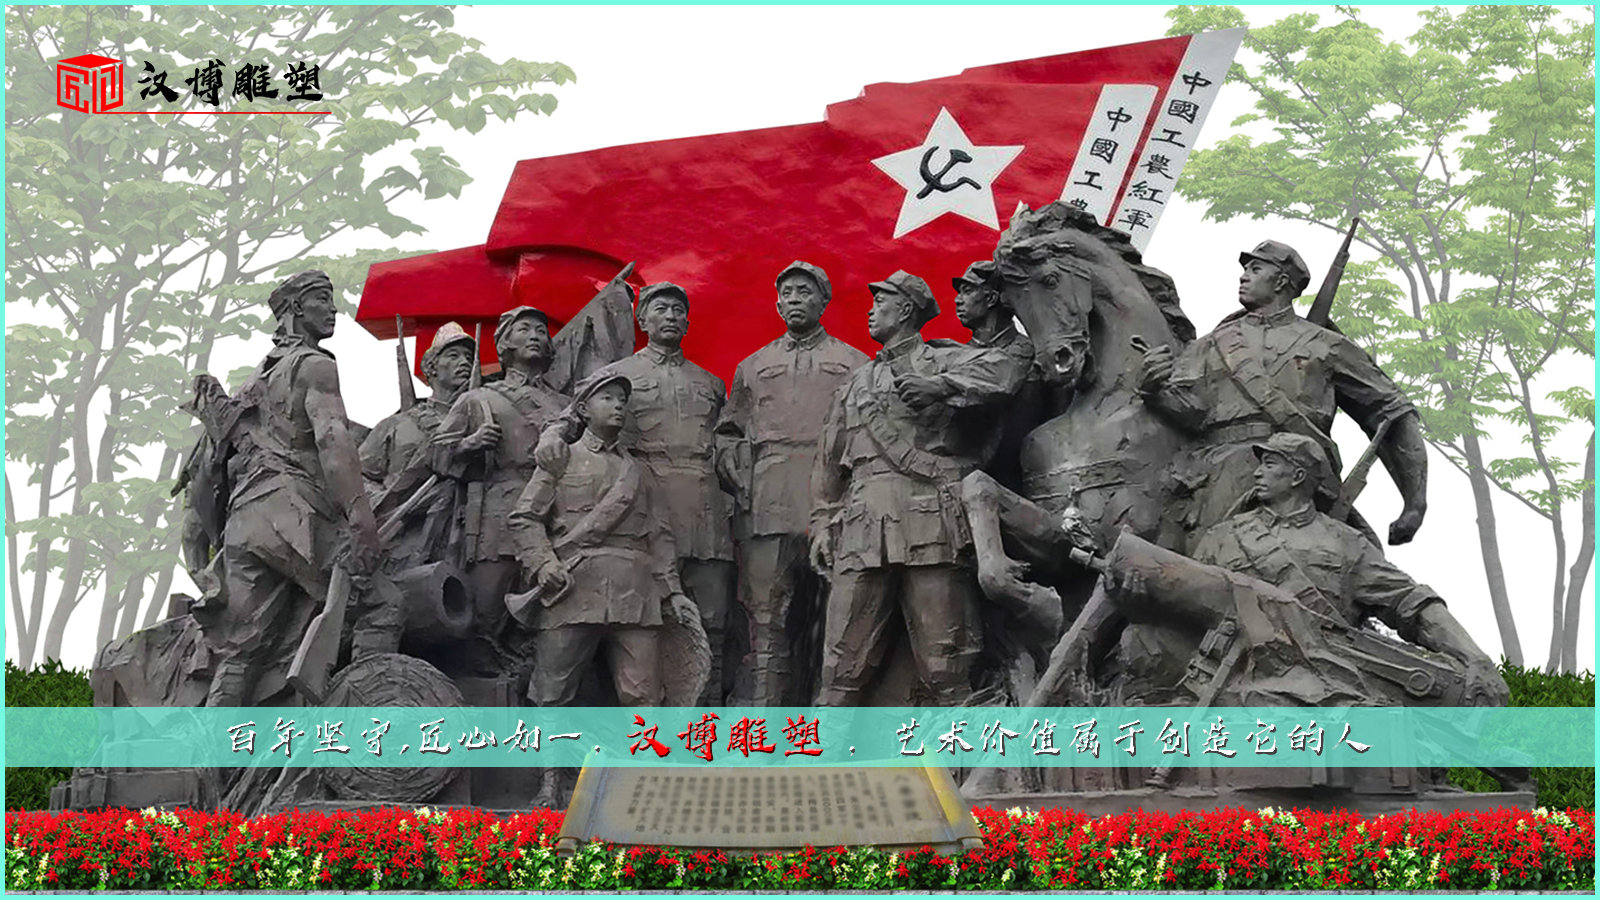 红军雕塑,人物雕像,坑站英雄铜雕